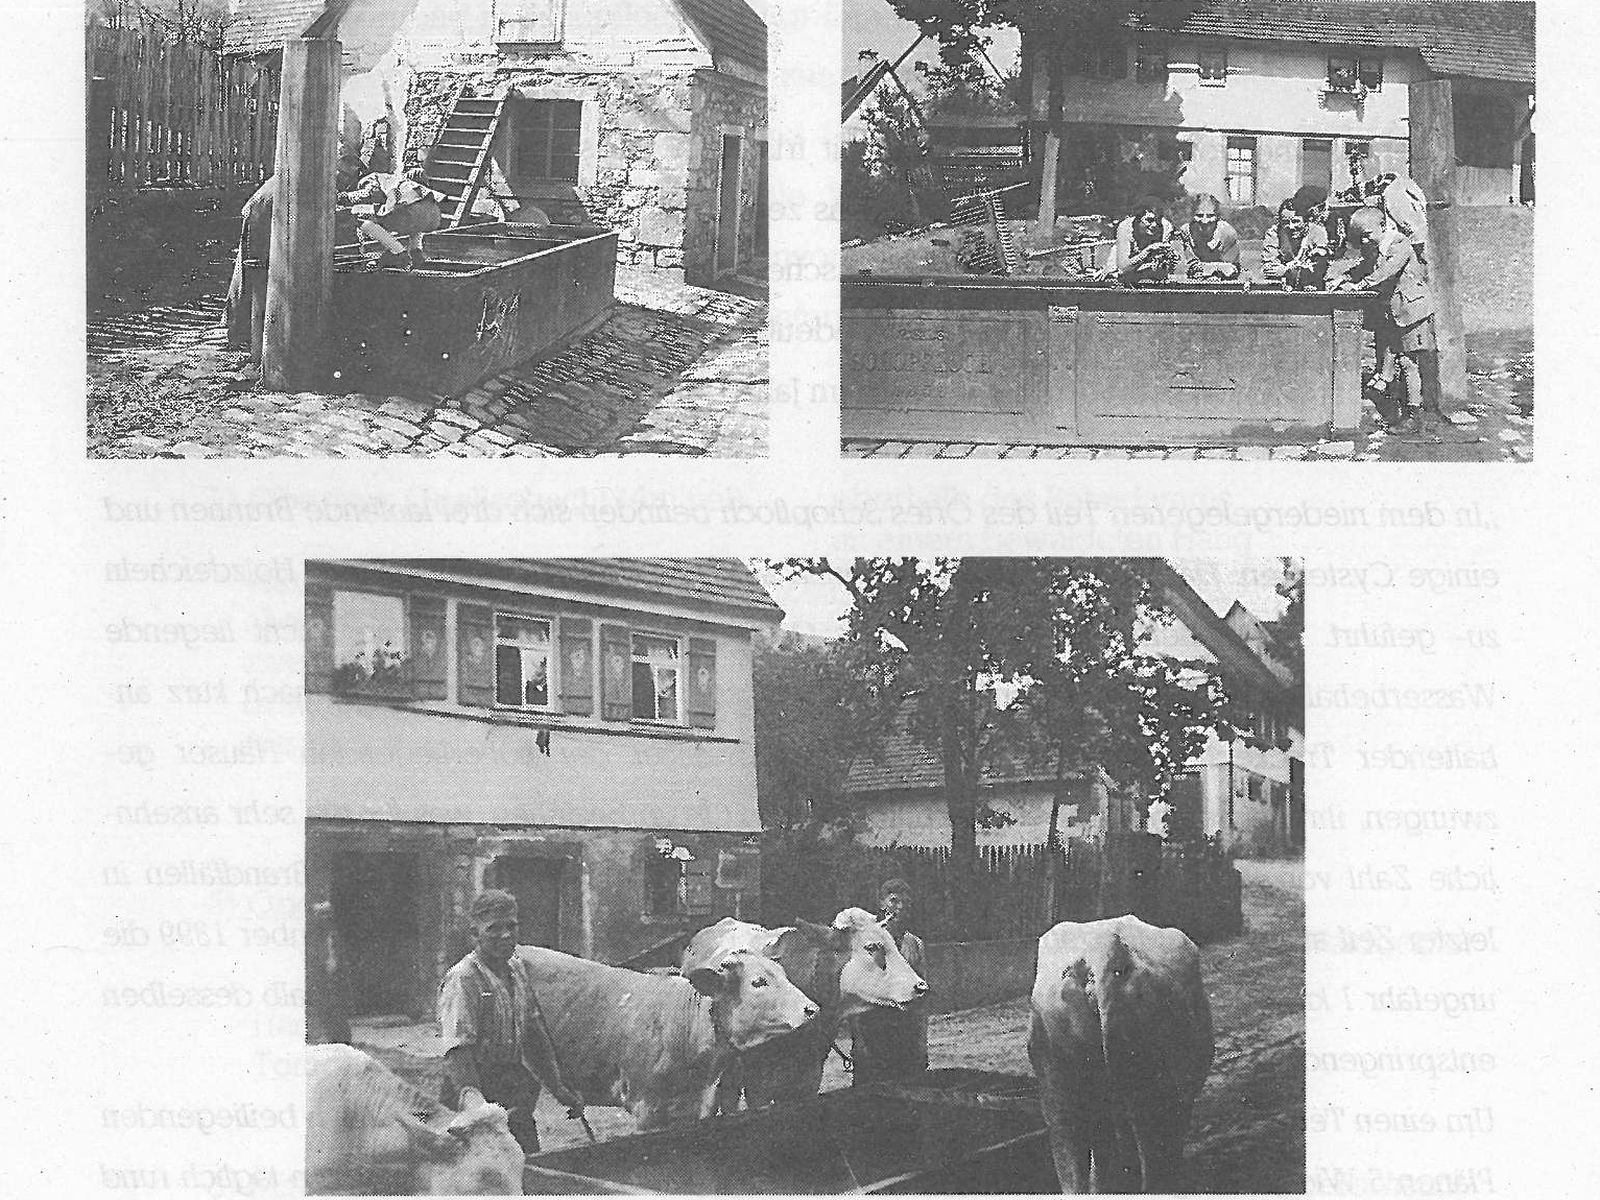  Schopflocher Skizzen Am Dorfbrunnen vermutlich im Jahr 1935 - Bild wird mit einem Klick vergrößert 